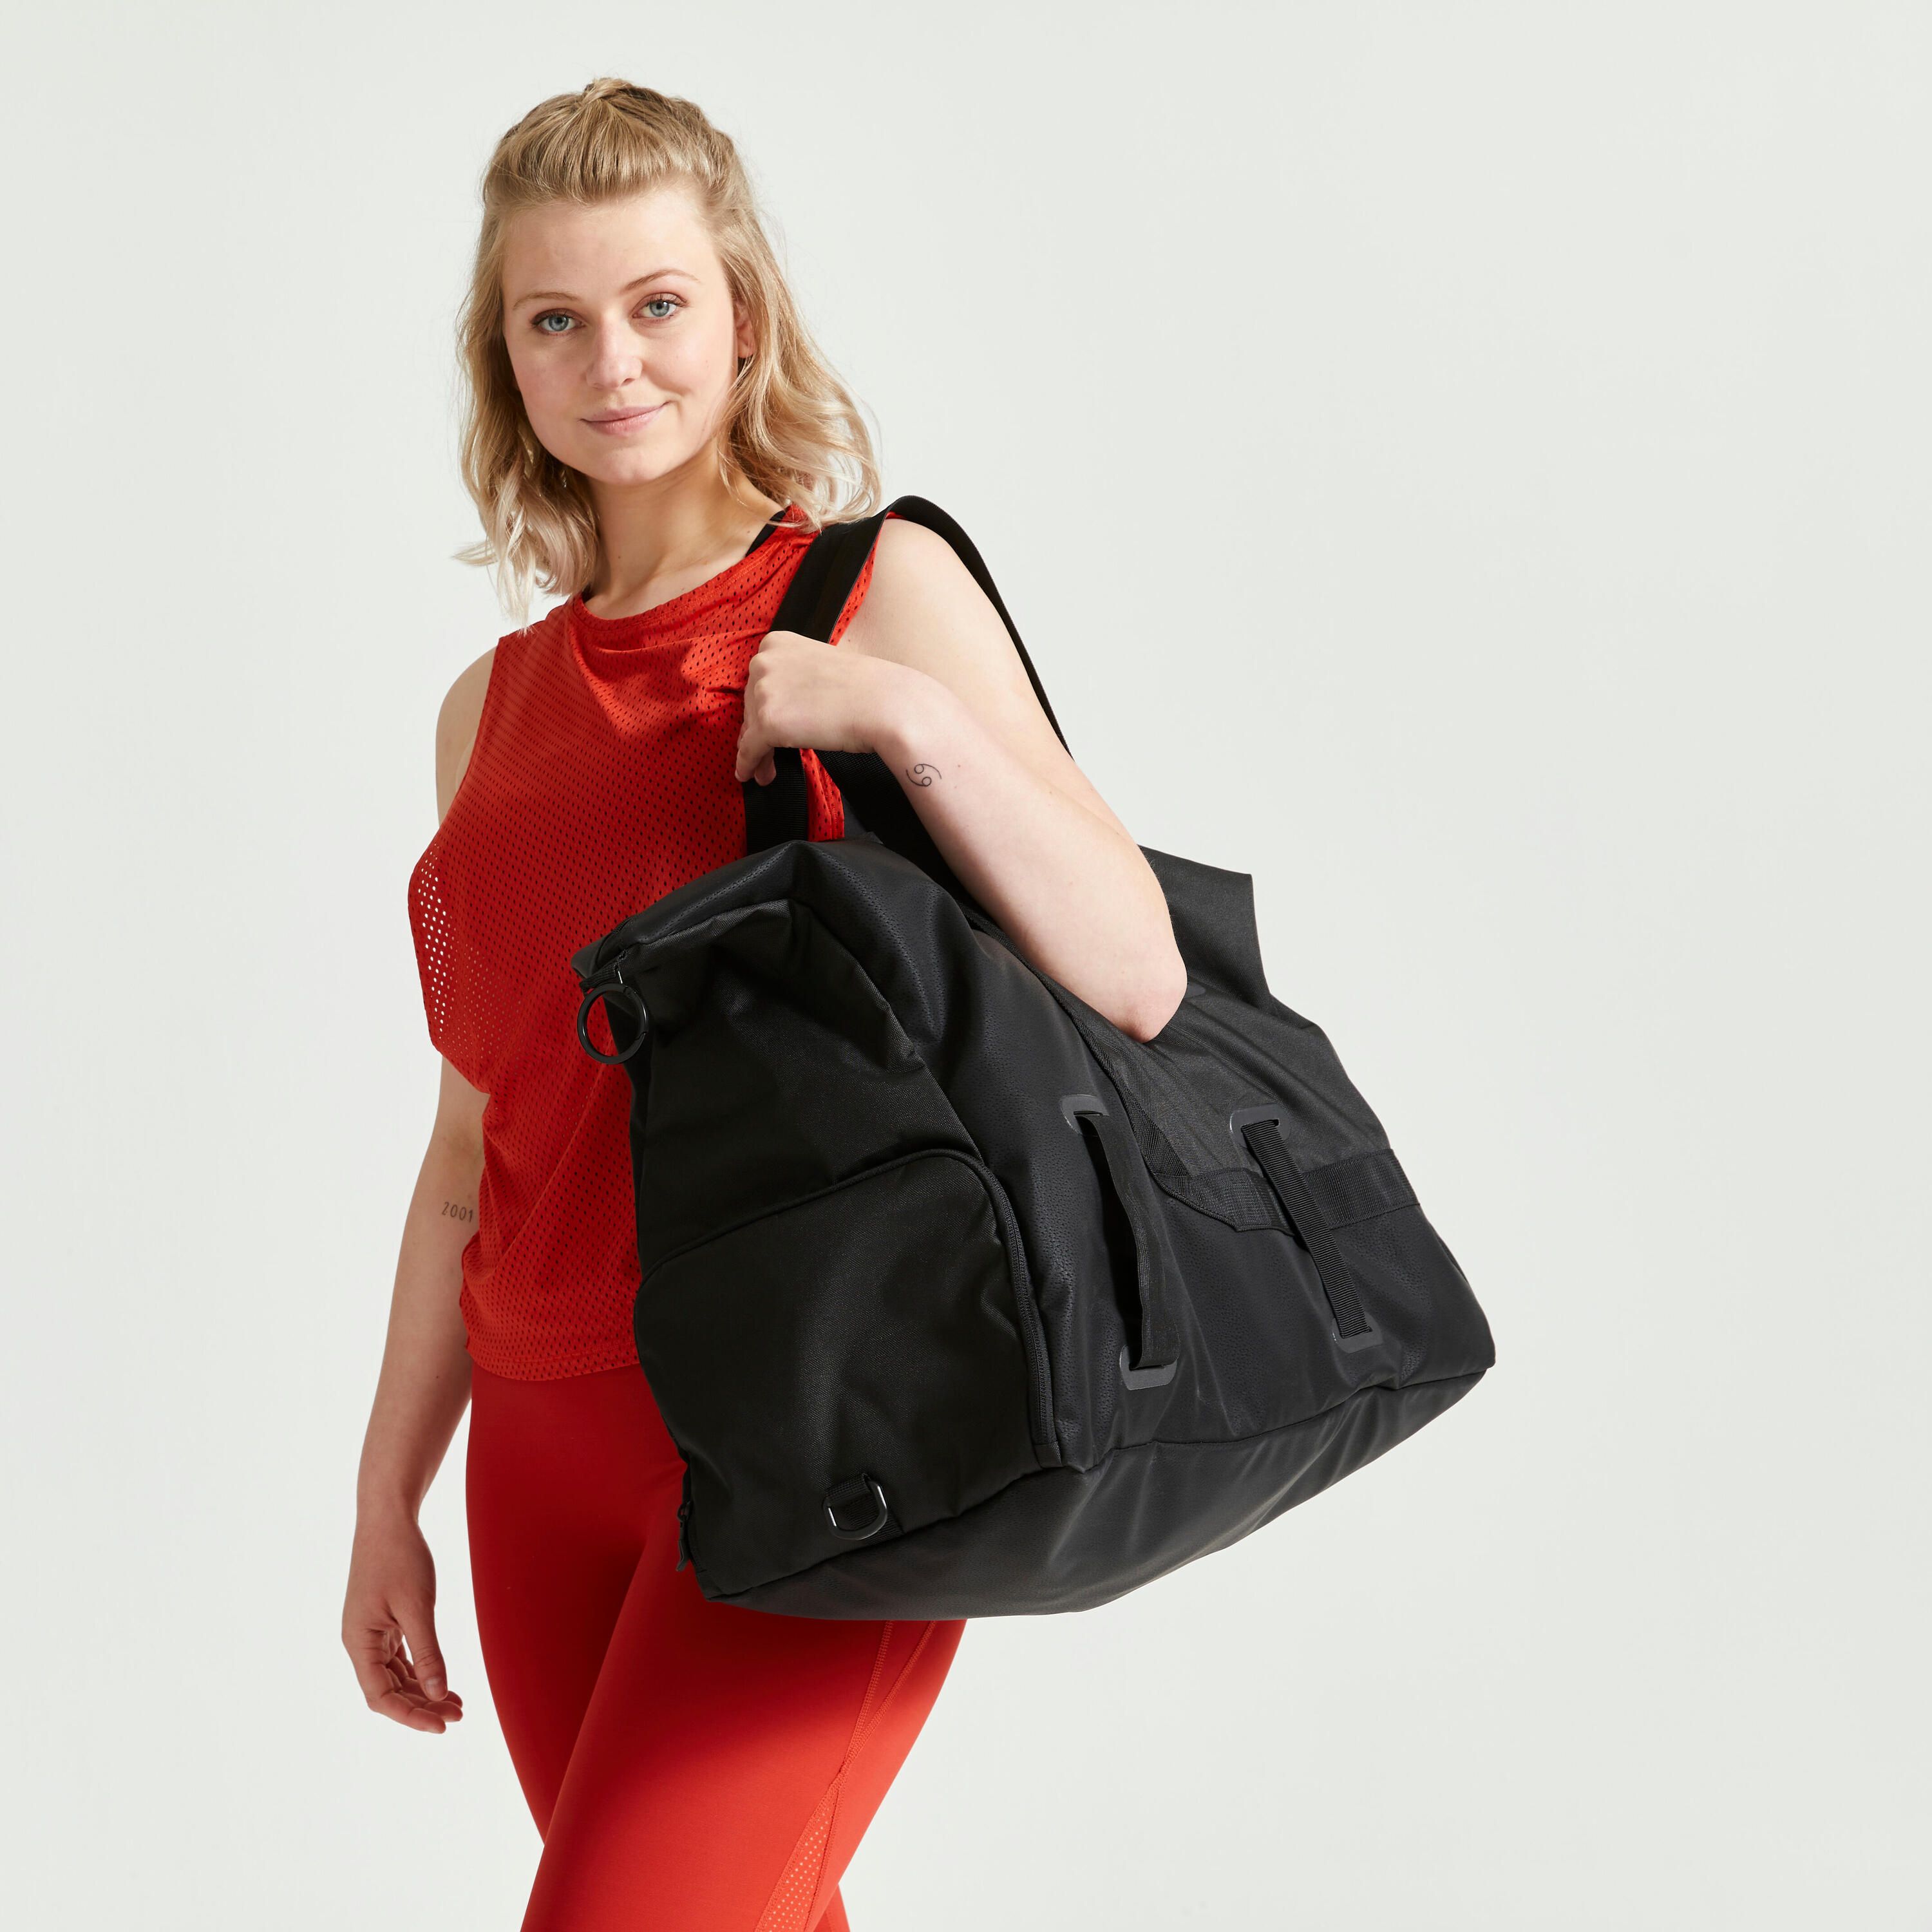 An Elegant Training Bag Designed For Both Men And Women 8/9